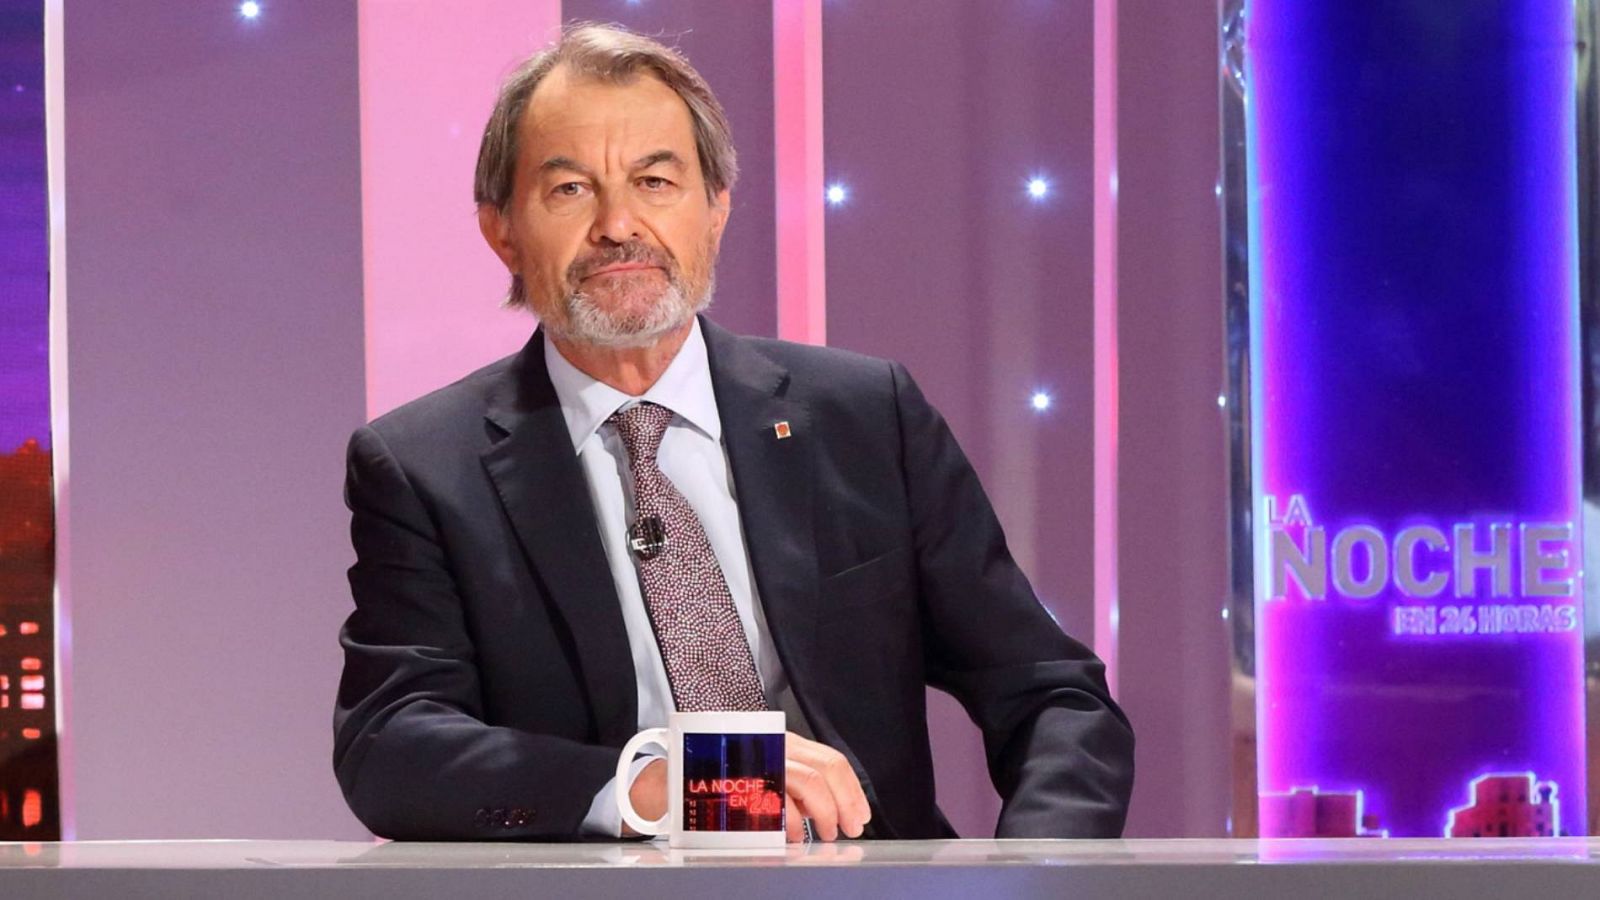 Artur Mas: "El tema central no es si hay vía unilateral o no, el tema central es si hay referéndum o no" - RTVE.es